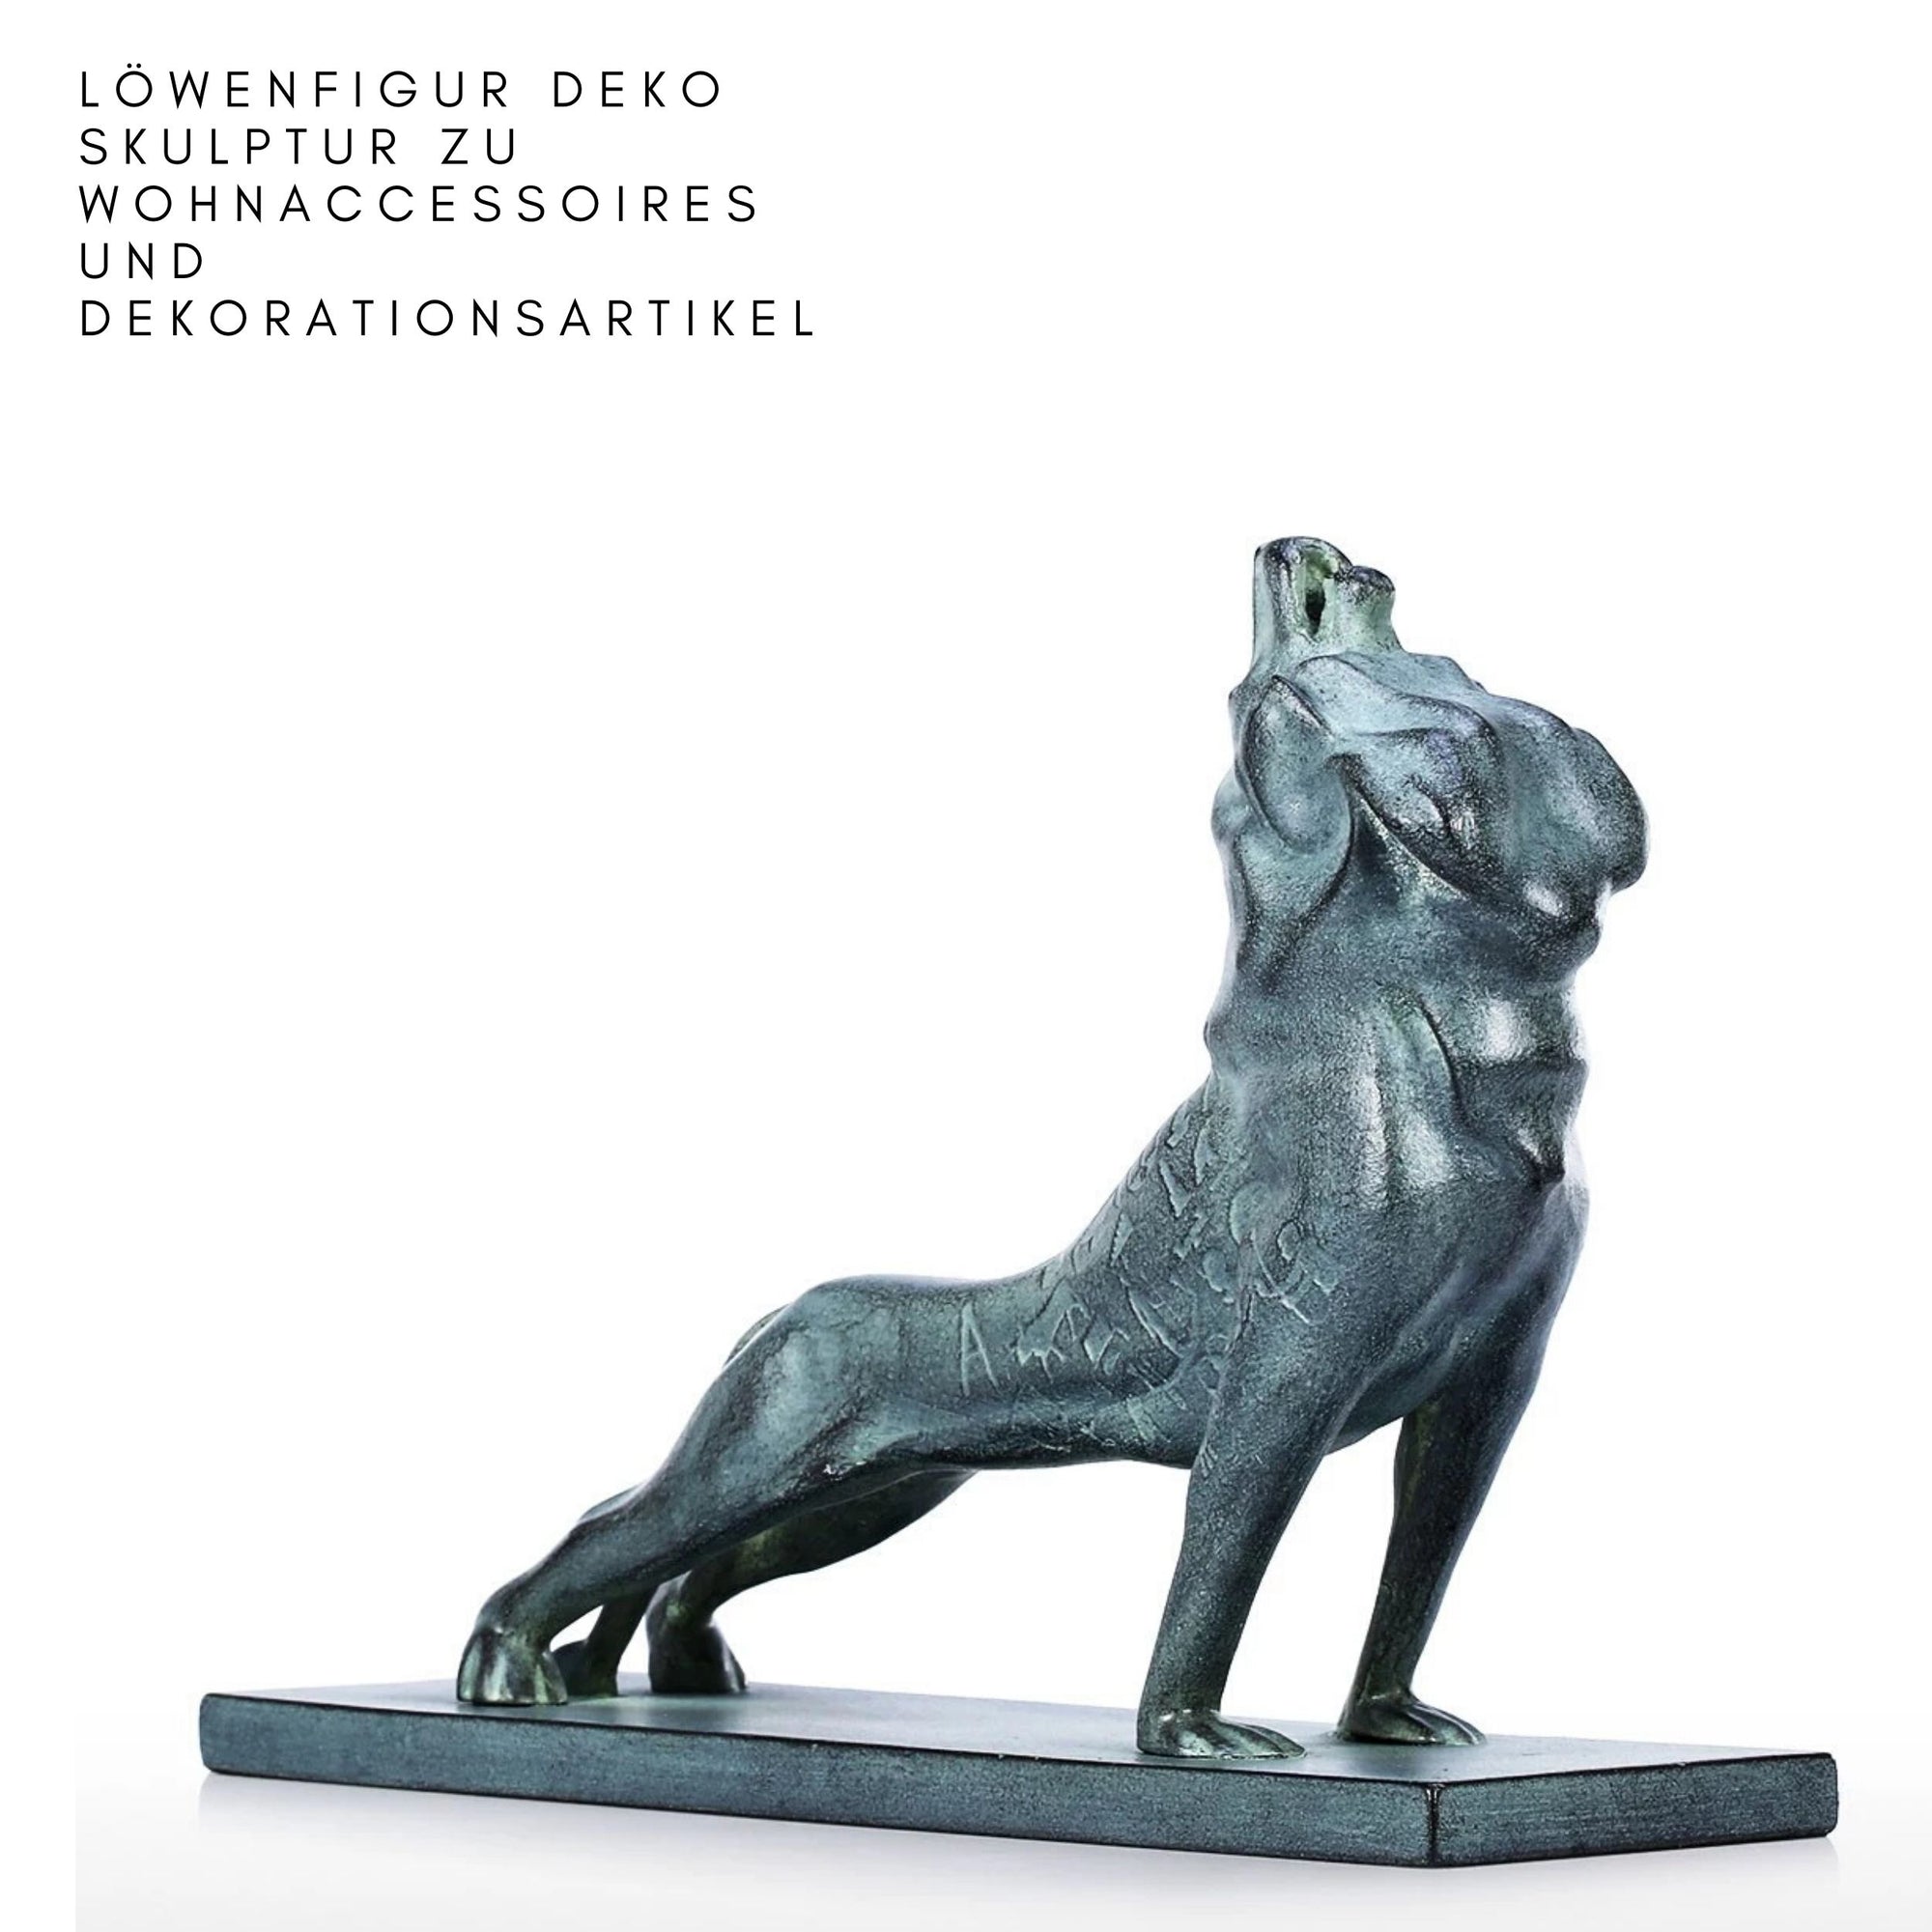 Löwenfigur Deko Skulptur zu Wohnaccessoires und Dekorationsartikel